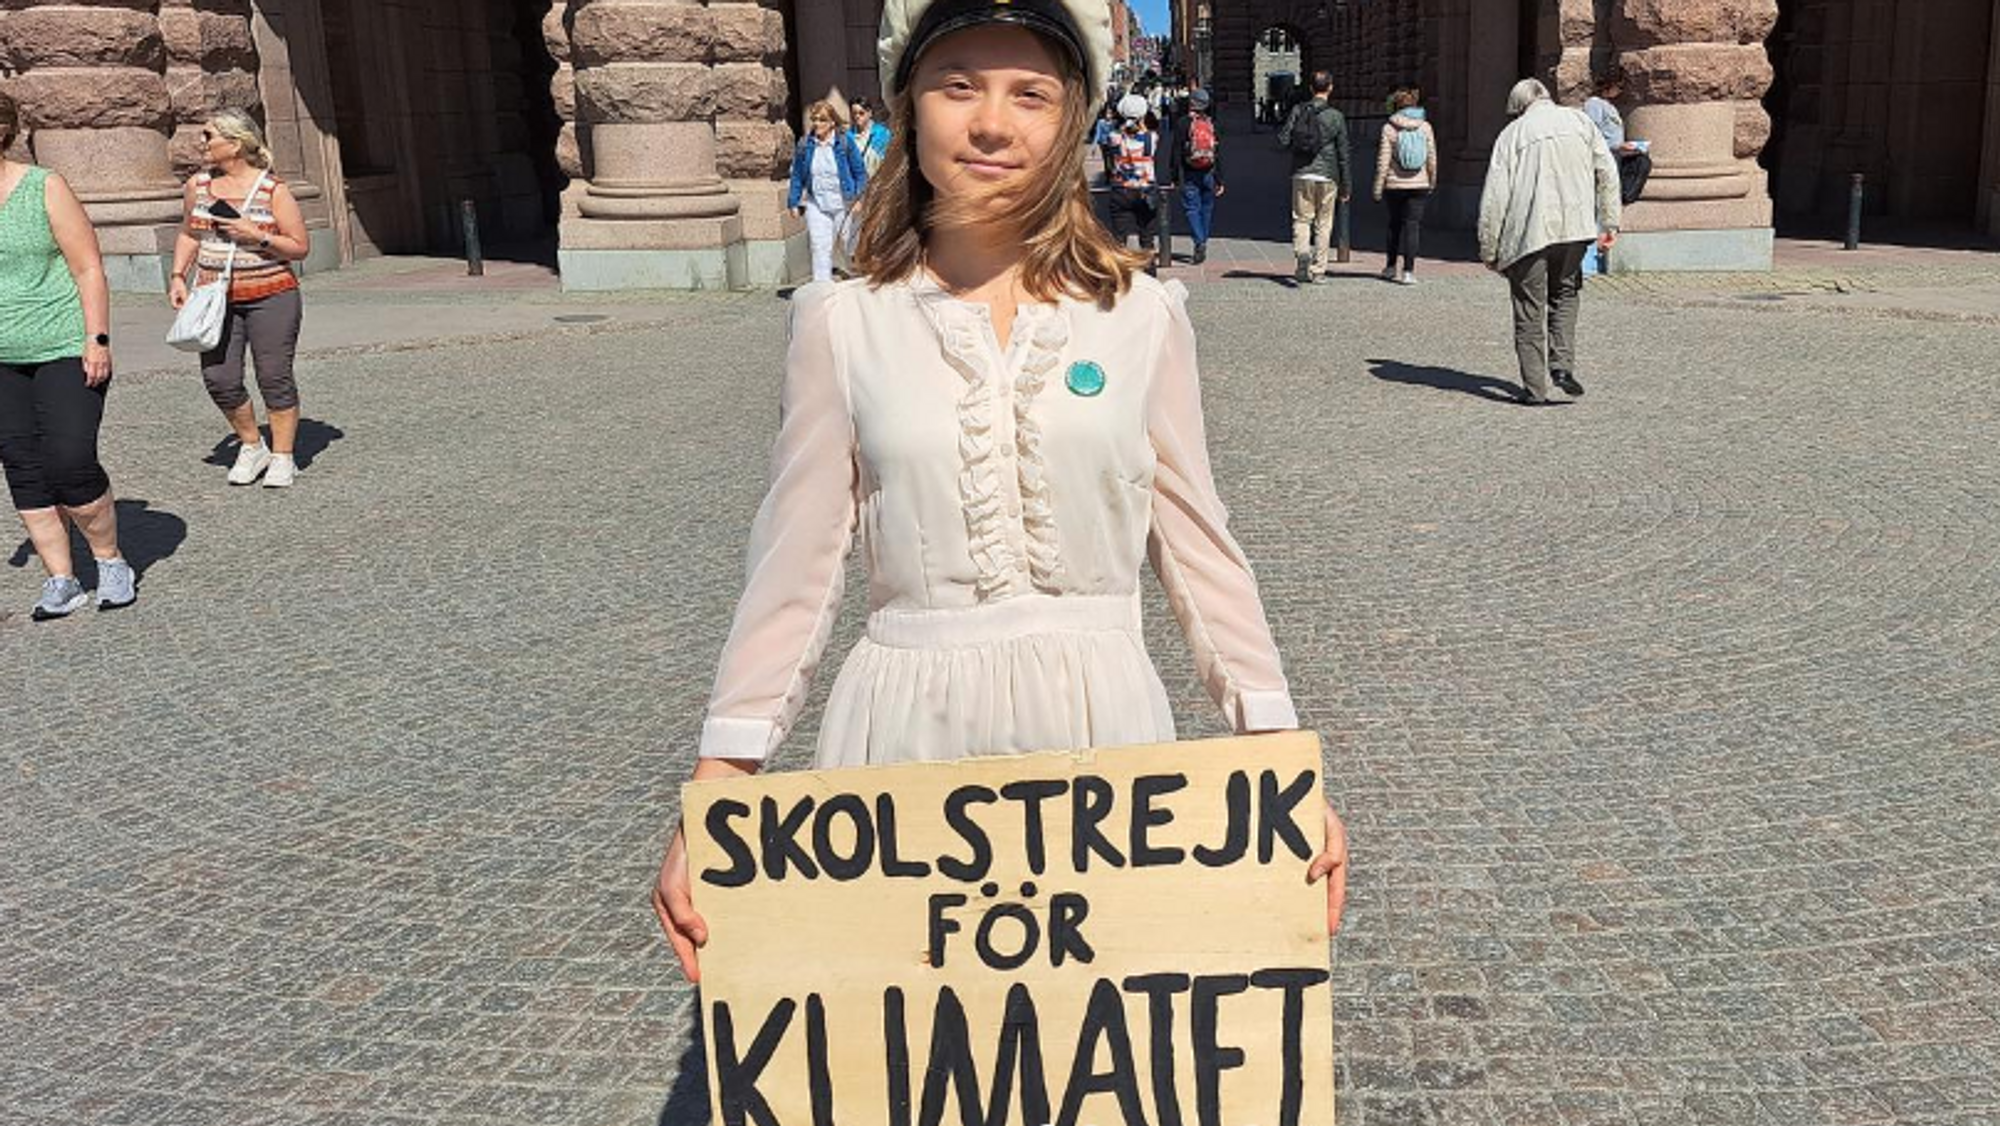 Ung kvinne holder skilt med teksten "skolstrejk for klimatet".